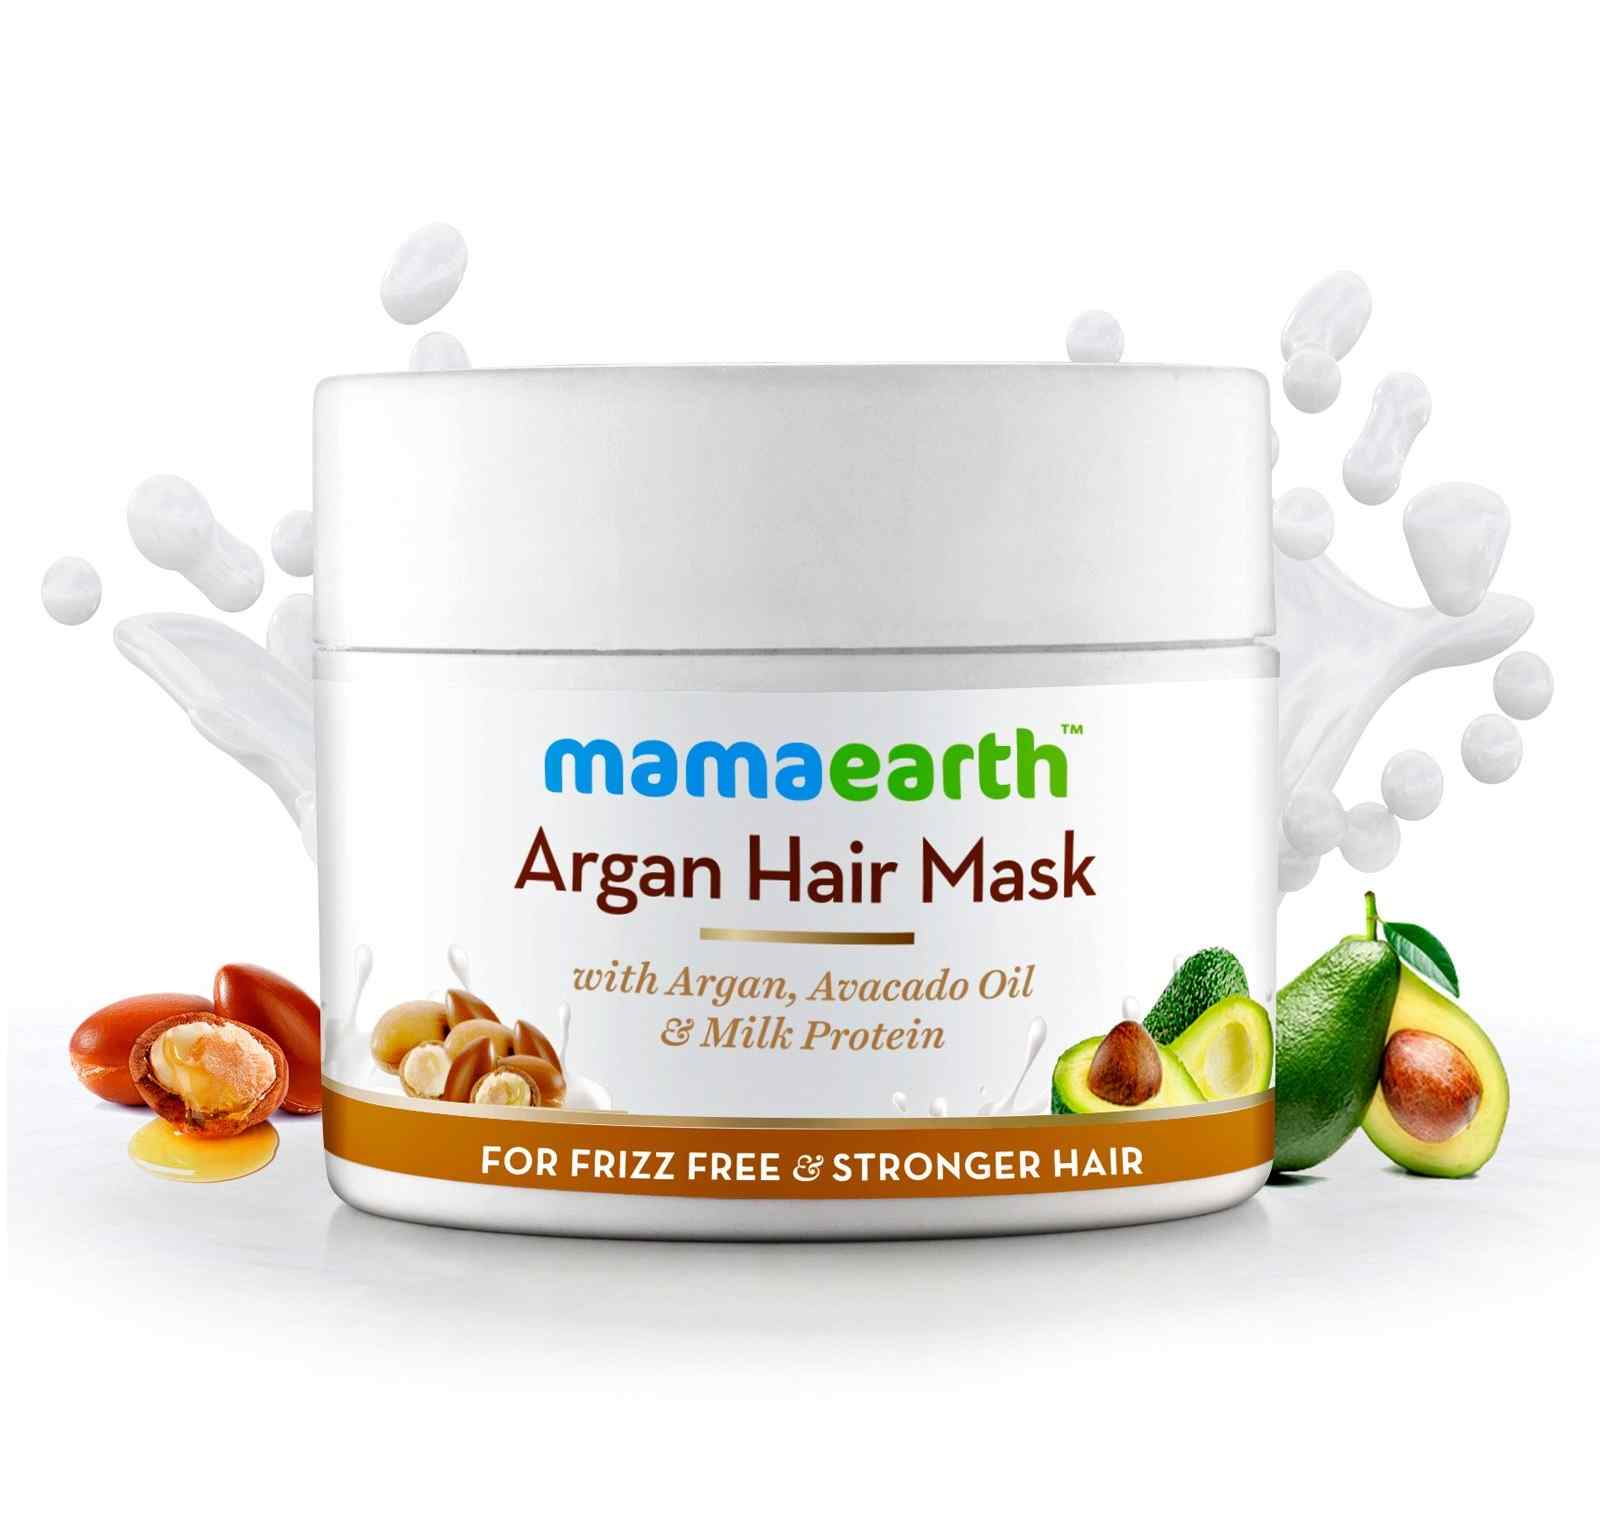 MamaEarth Argan Hair Mask